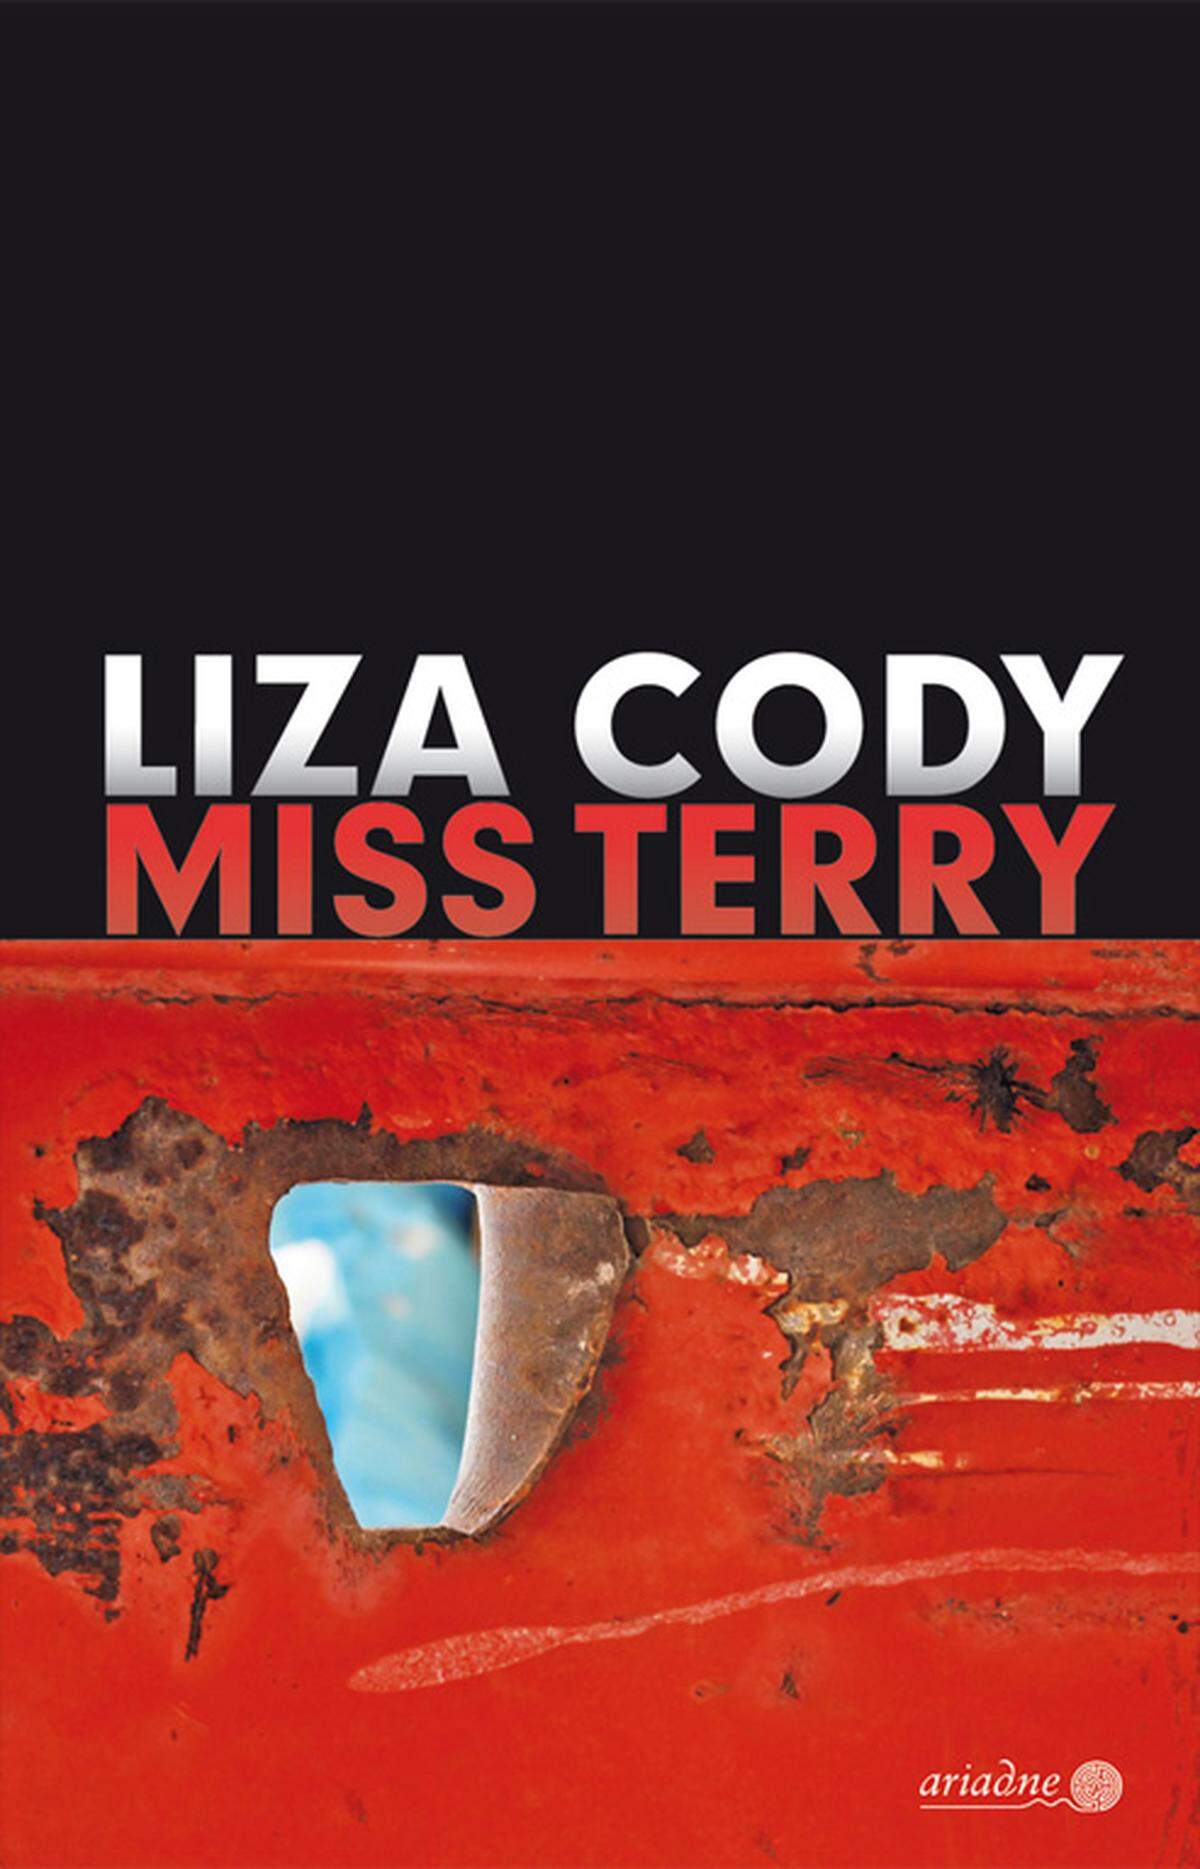 Die titelgebende "Miss Terry" heißt eigentlich Nita Tehri, aber ihr Nachname wird meist falsch ausgesprochen. Nita ist eine beliebte Lehrerin, deren Leben vollkommen aus den Fugen gerät, als ein totes Baby mit dunkler Hautfarbe in einem Container vor ihrem Haus gefunden wird. Ab sofort sieht sich Nita mit Beschuldigungen und Verdächtigungen konfrontiert. Lizy Cody hat einen einfühlsamen Krimi über Rassismus und Vorurteile geschrieben, ohne dabei je anklagend zu werden. Dennoch ist dieses Buch zutiefst optimistisch - eine wahre Kunst angesichts der drückenden Thematik. Liza Cody: "Miss Terry". Übersetzt von Martin Grundmann, Ariadne Kriminalroman, 320 Seiten, 17,50 Euro.